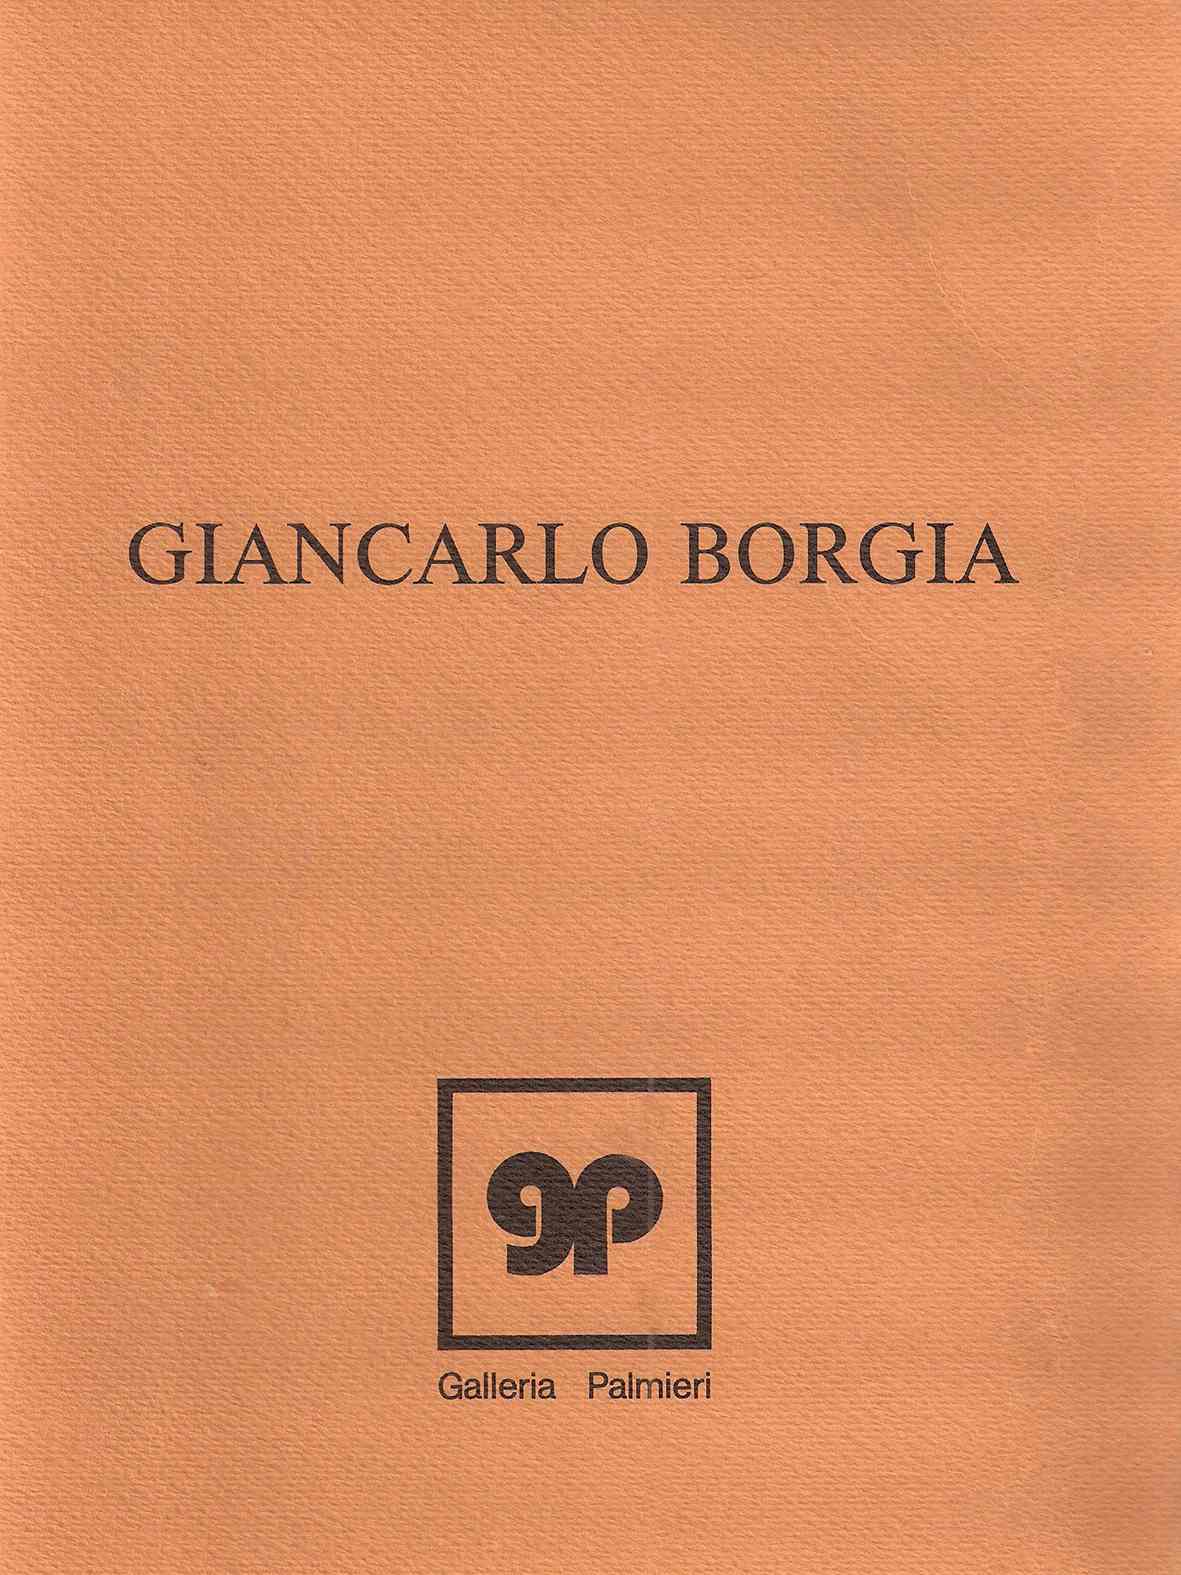 Giancarlo Borgia